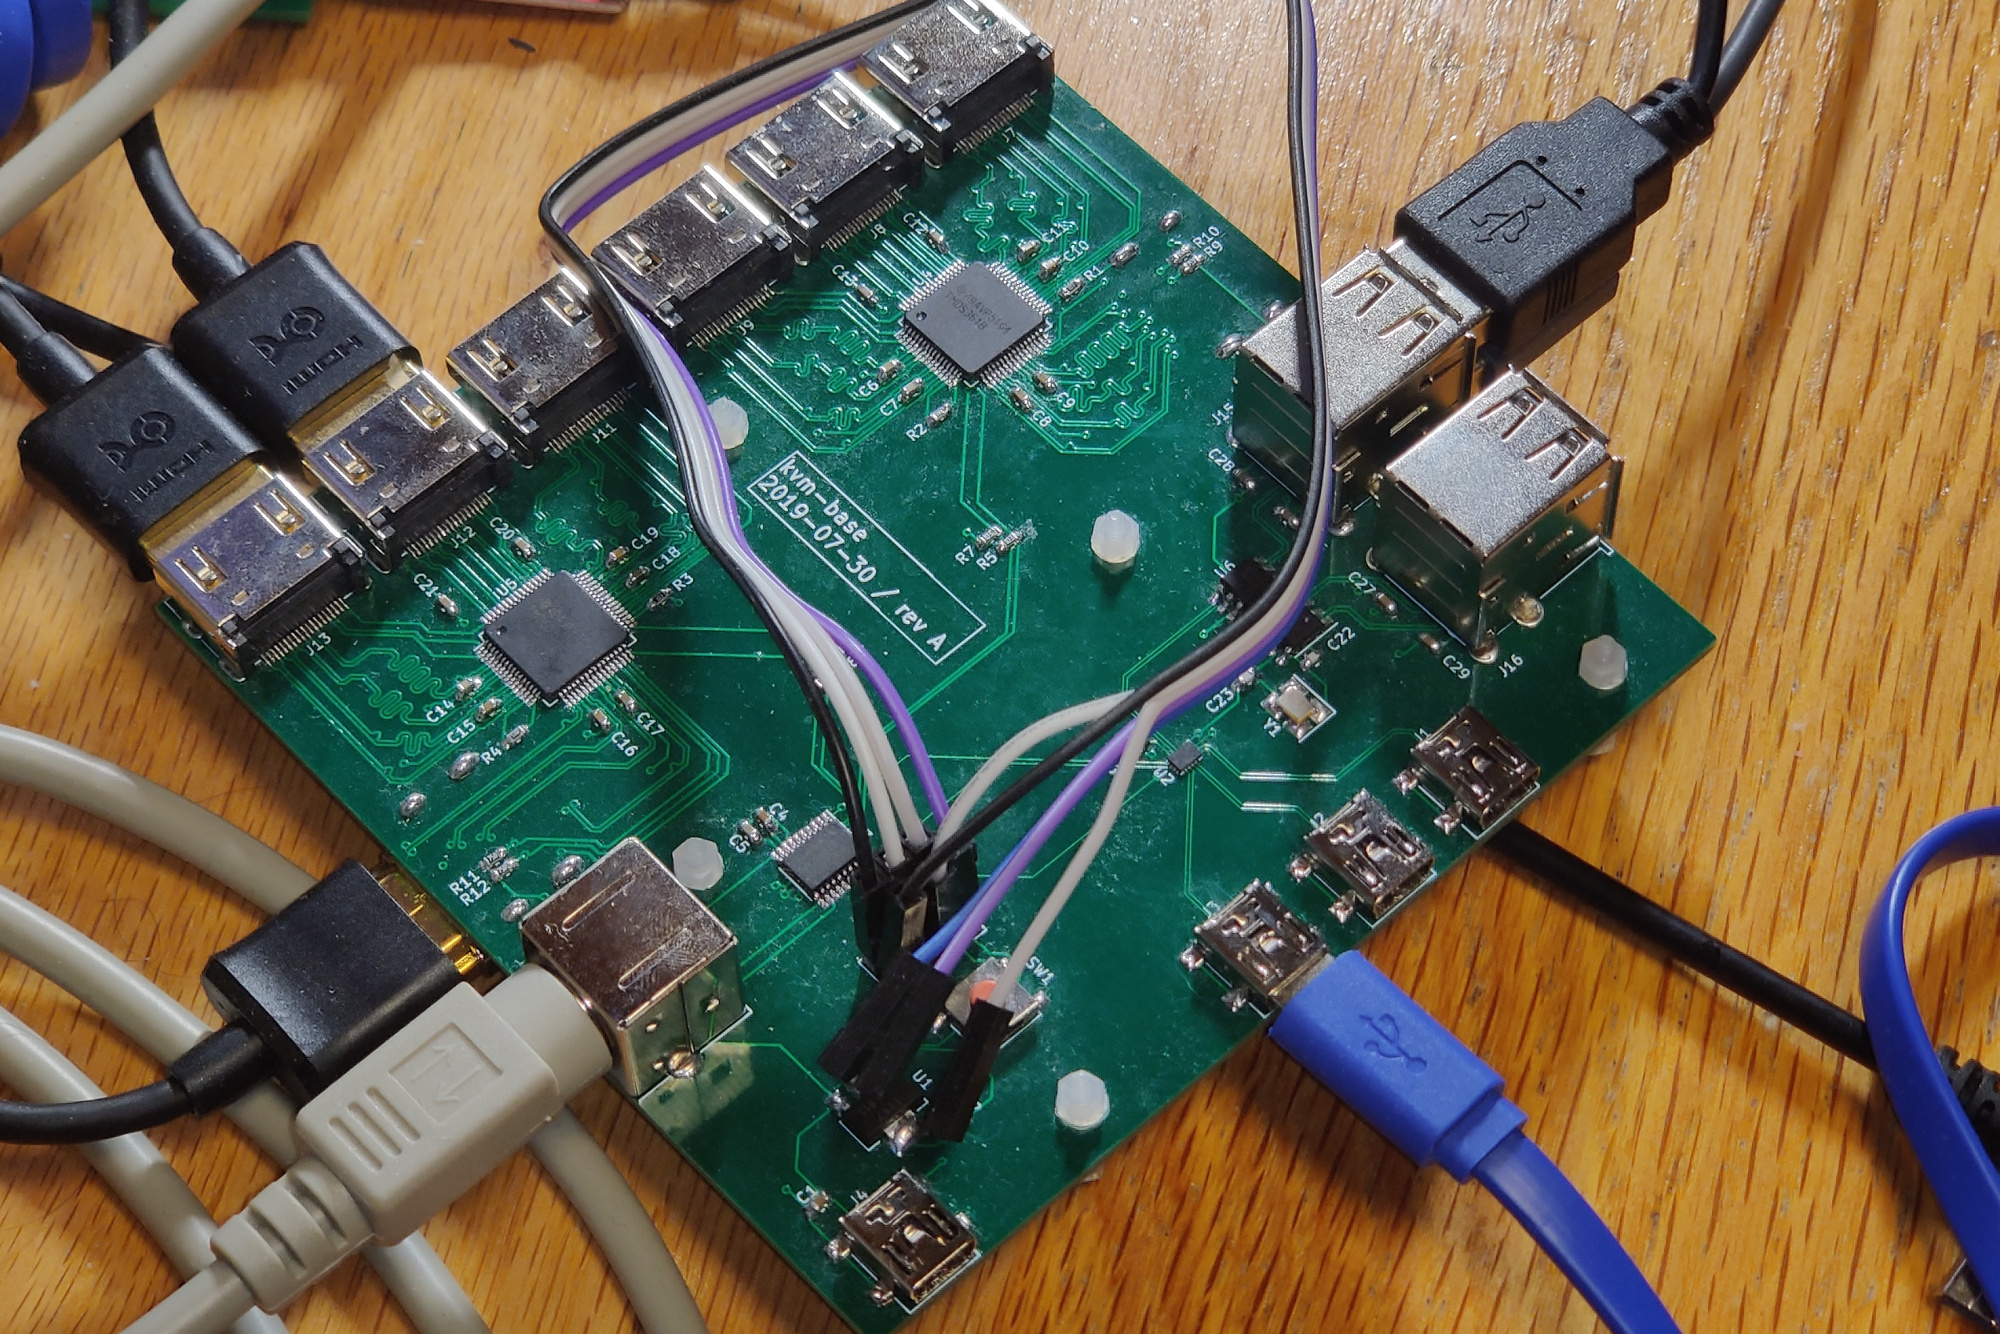 stadig komprimeret Gå igennem GitHub - thatoddmailbox/kvm-base: The main board for the open-source HDMI  KVM switch I built.